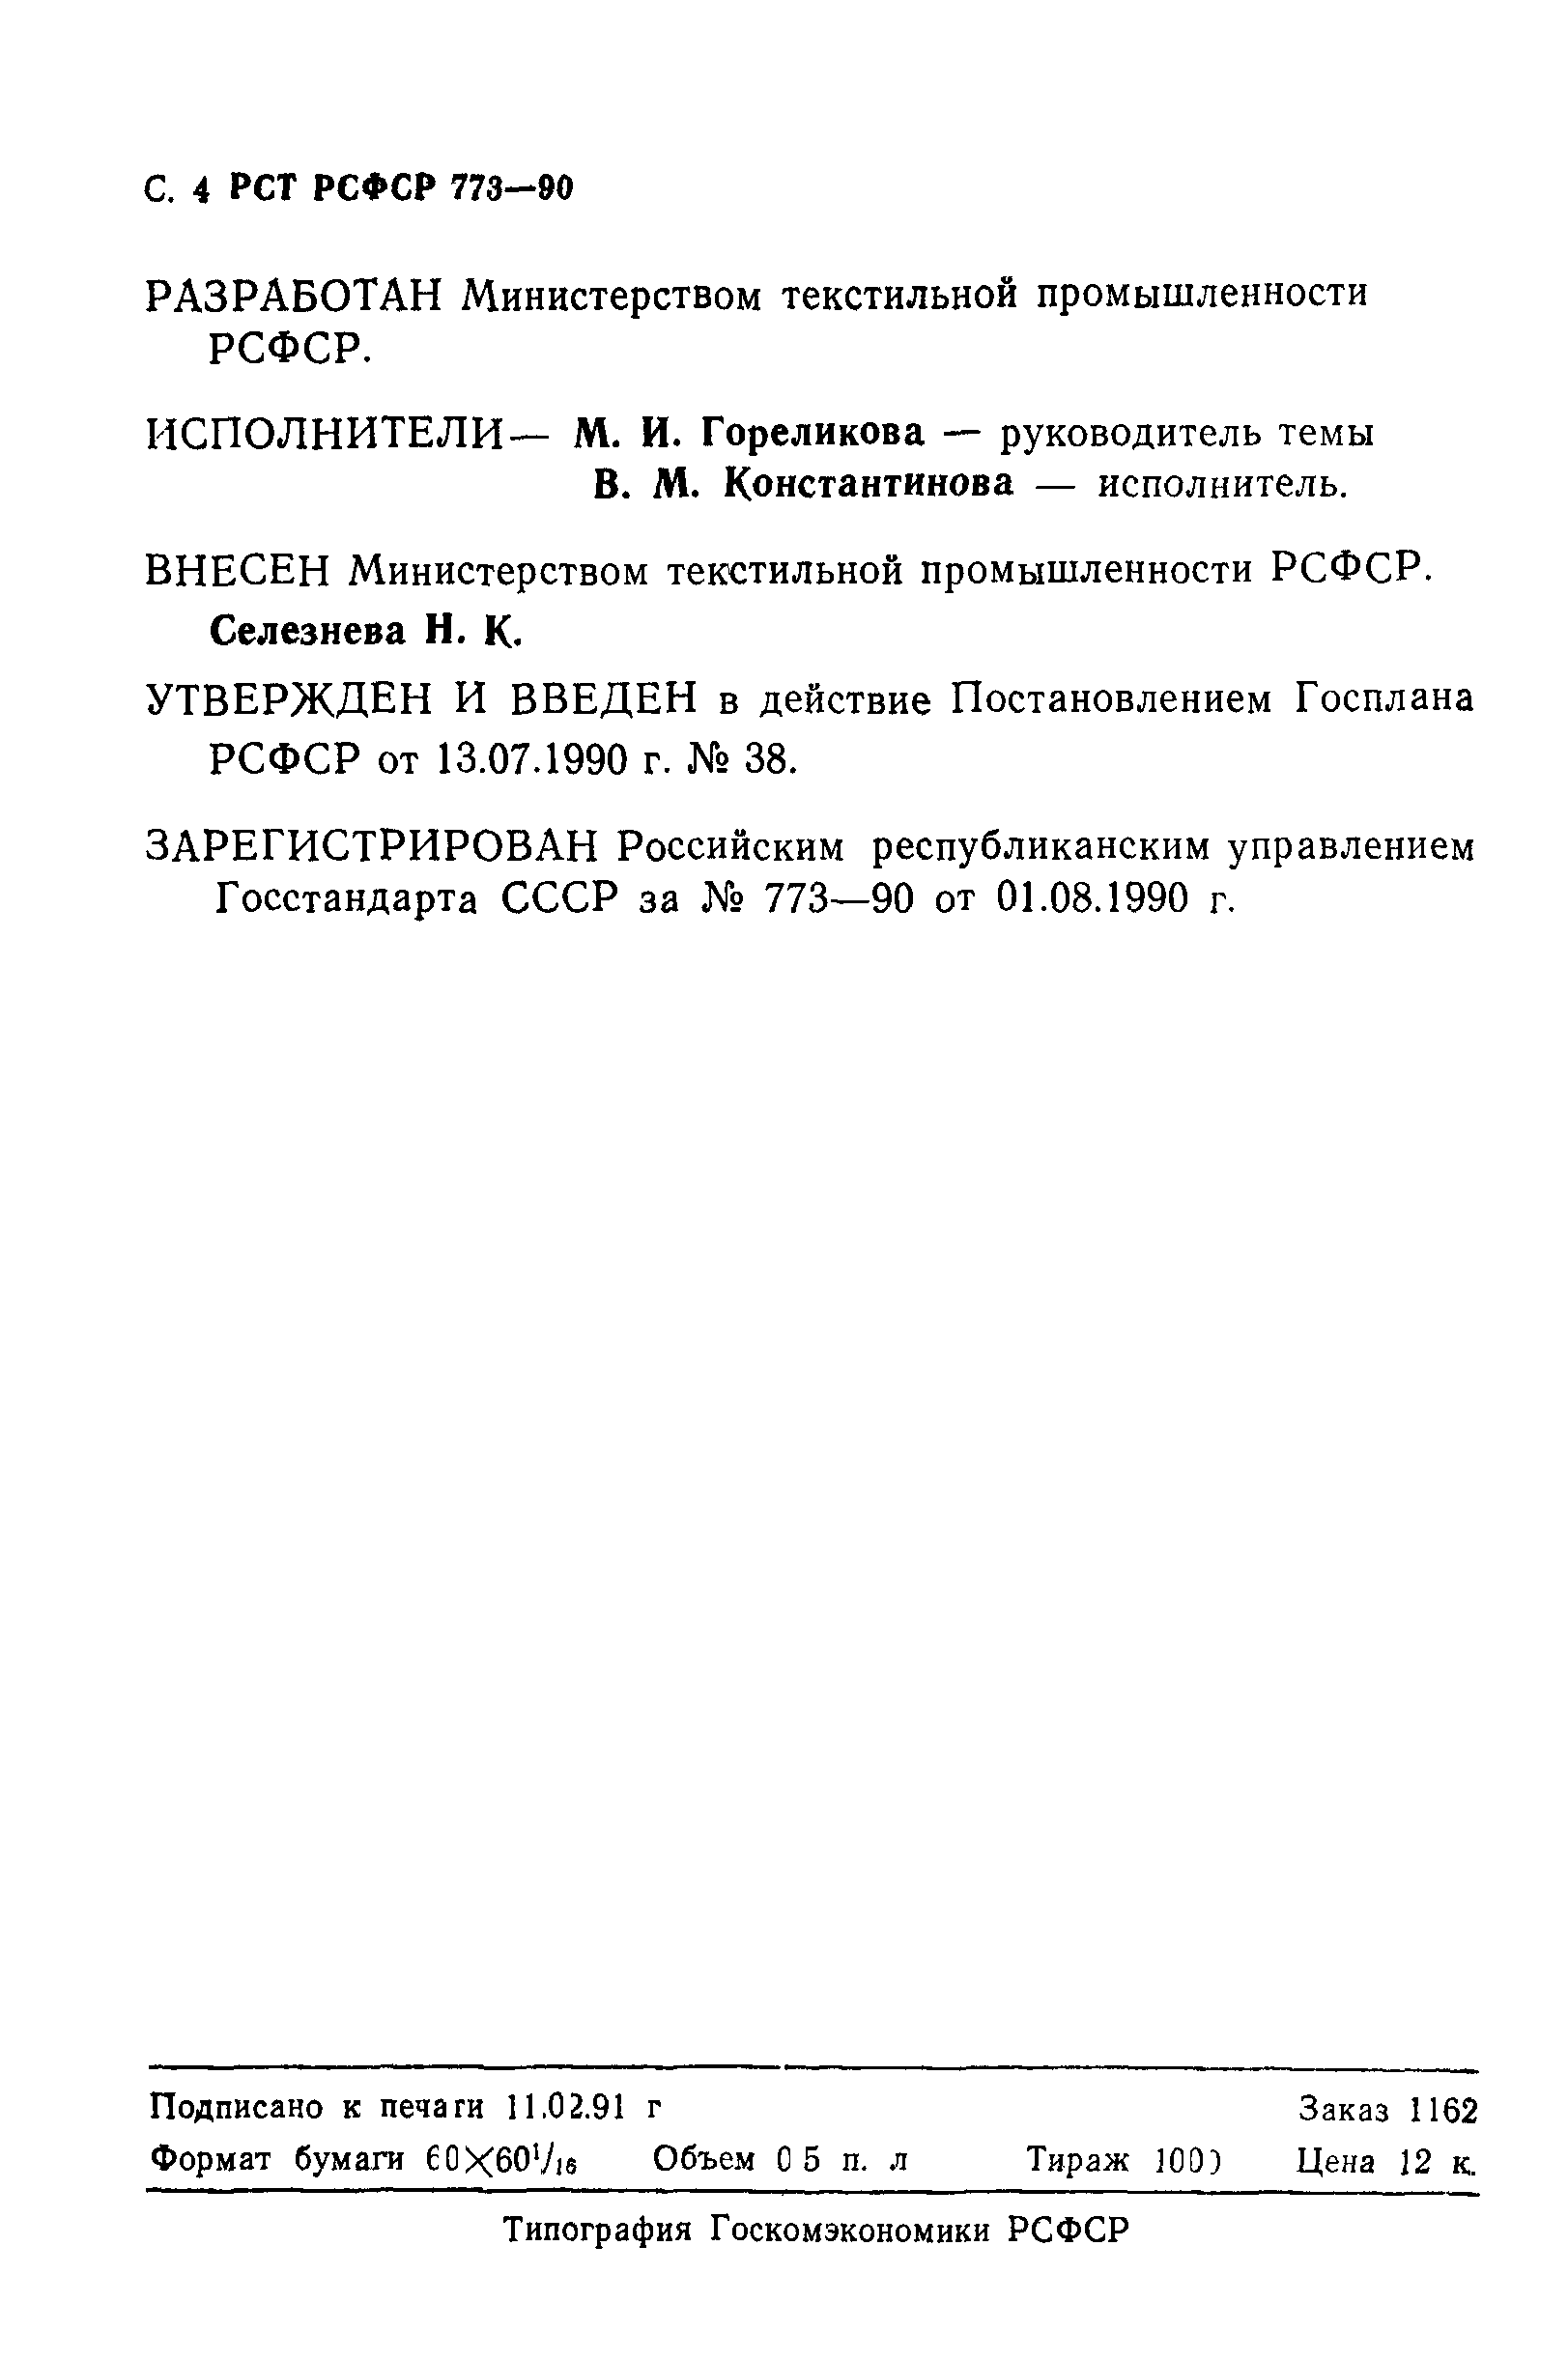 РСТ РСФСР 773-90